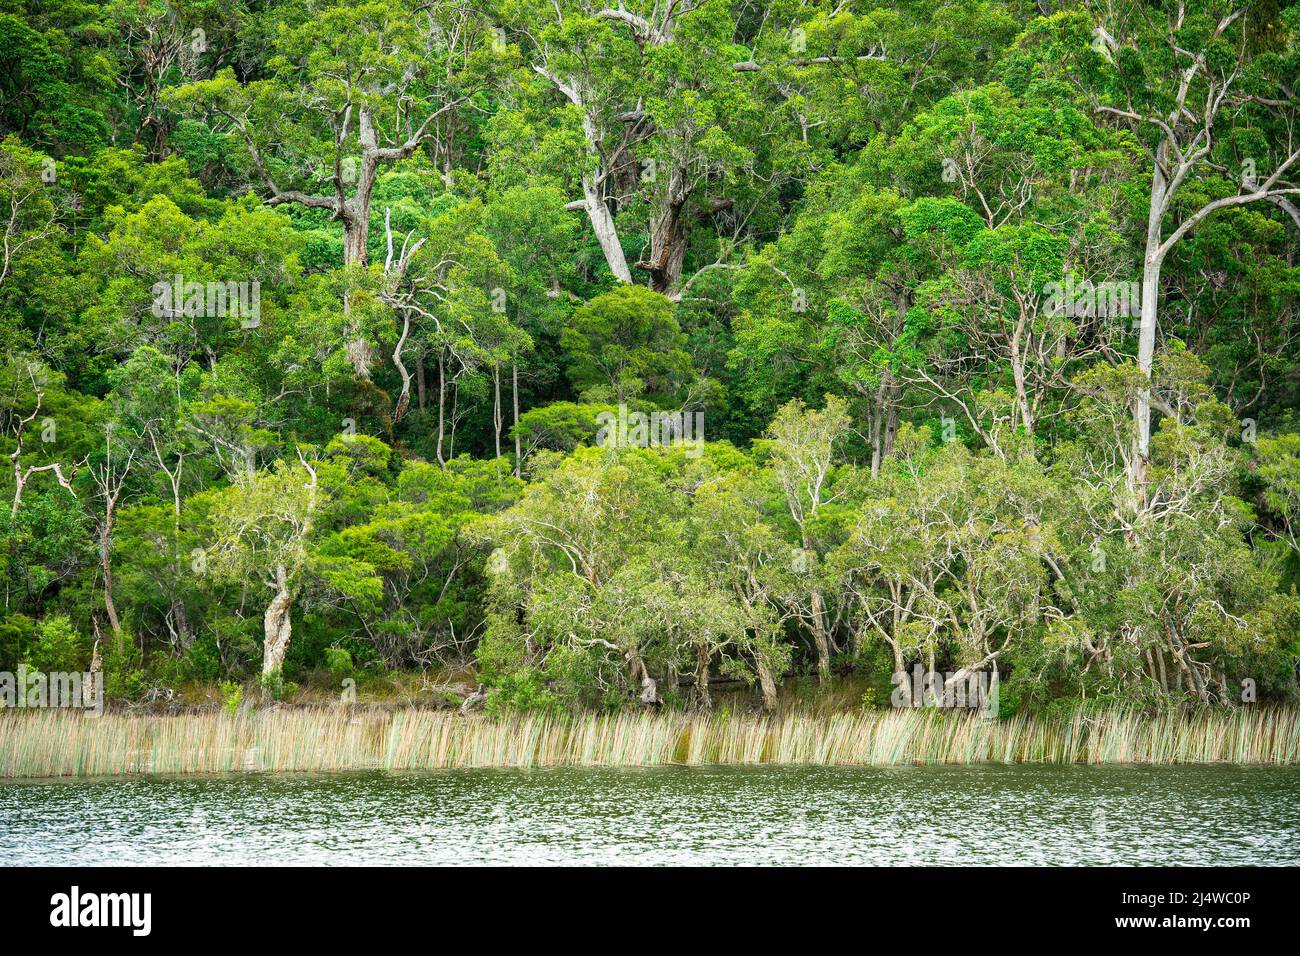 El lago Allom es un tesoro de turistas, escondido en un bosque de árboles Melaleuca (de corteza de papel), pinos Hoop (Araucaria cunninghamii) y setos. Foto de stock